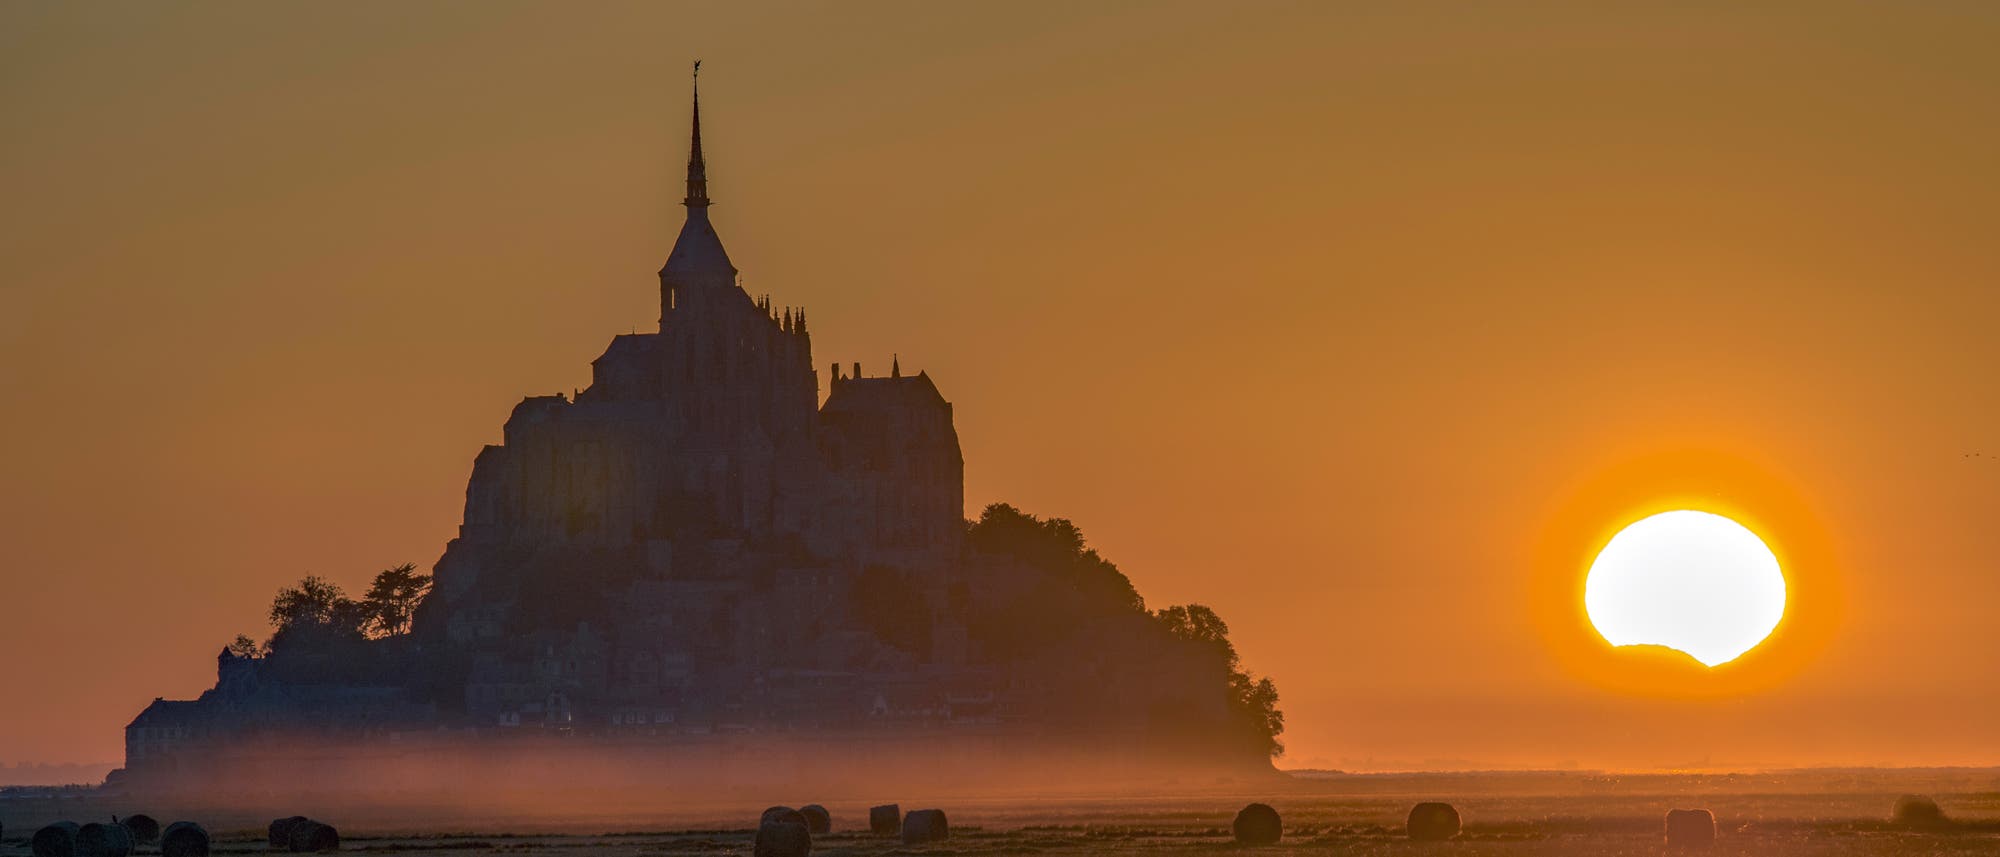 Die Klosterinsel Mont-Saint-Michel in der Normandie, eine Welterbestätte der UNESCO, bildete am 21. August 2017 eine malerische Kulisse für einen besonderen Sonnenuntergang. Teilweise vom Mond bedeckt, sank unser Tagesgestirn unter den Horizont.